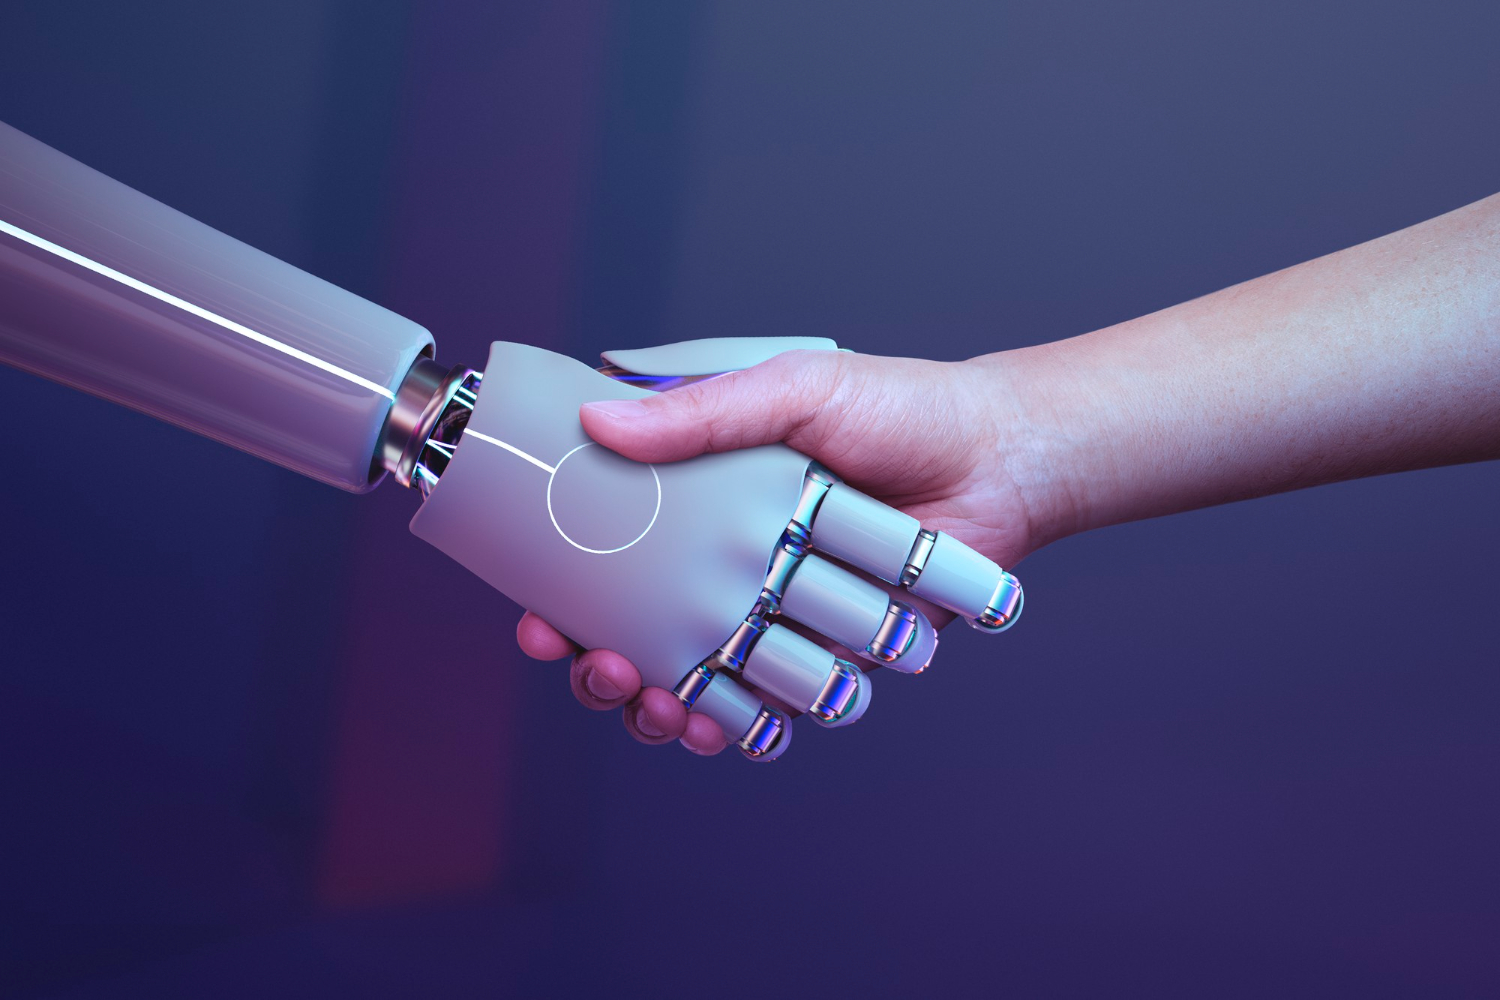 Handshake of robot and human